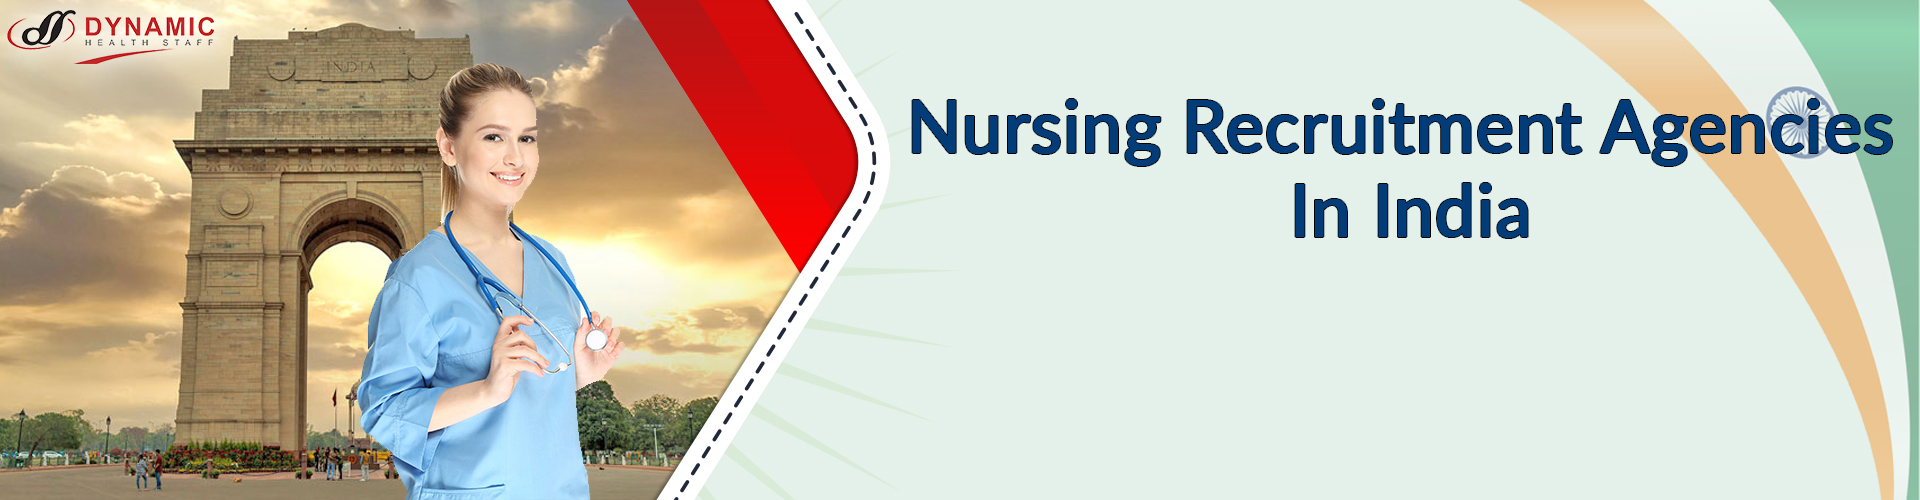 Nursing Recruitment Agencies In India